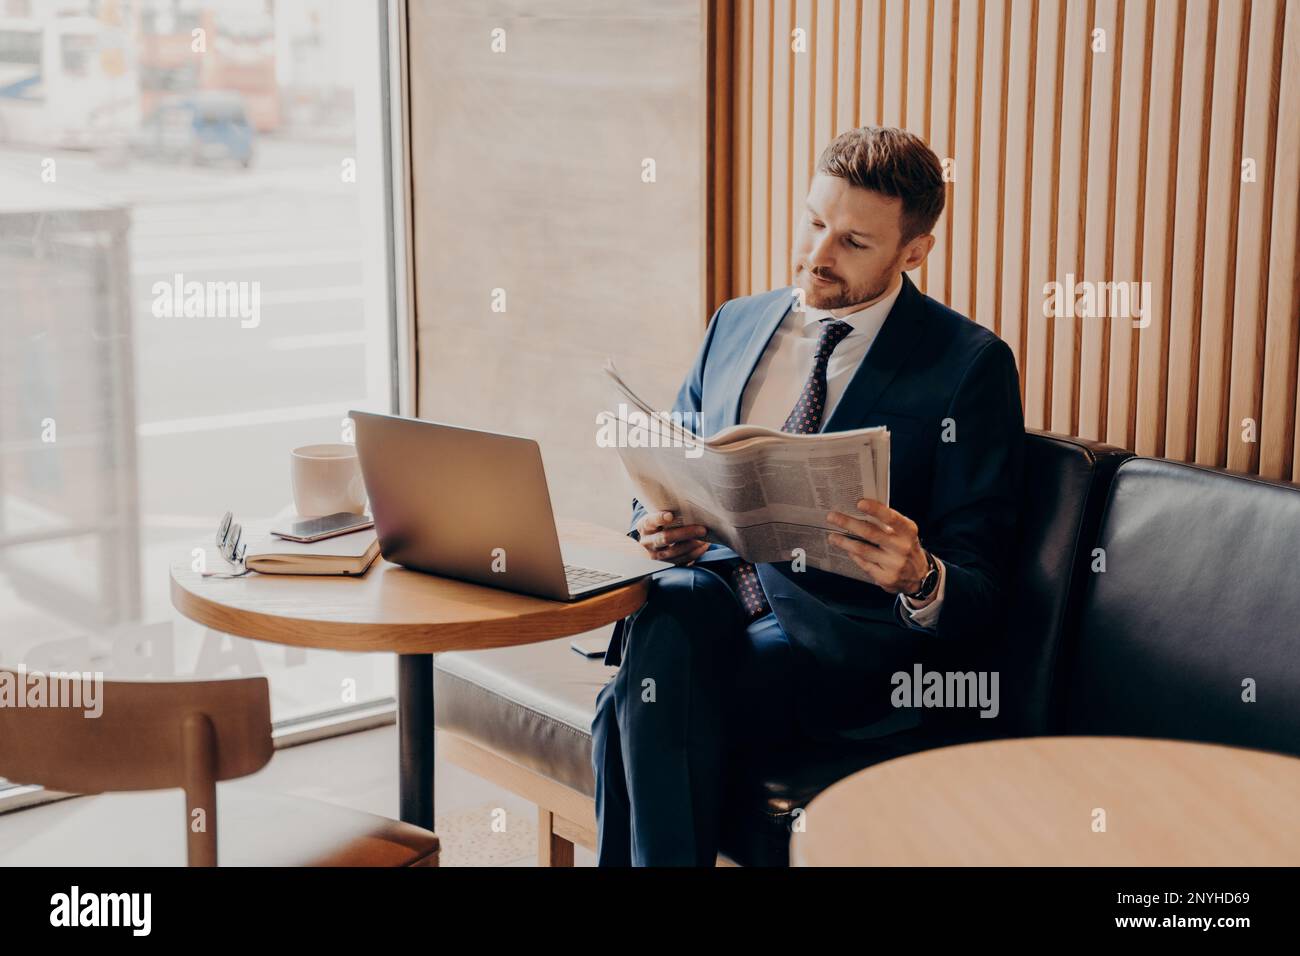 Fokussierter, reicher junger Geschäftsmann in blauem Anzug und weißem Hemd liest Nachrichten über sein Startup-Unternehmen in einer lokalen Zeitung, während er allein im gemütlichen Café sitzt Stockfoto